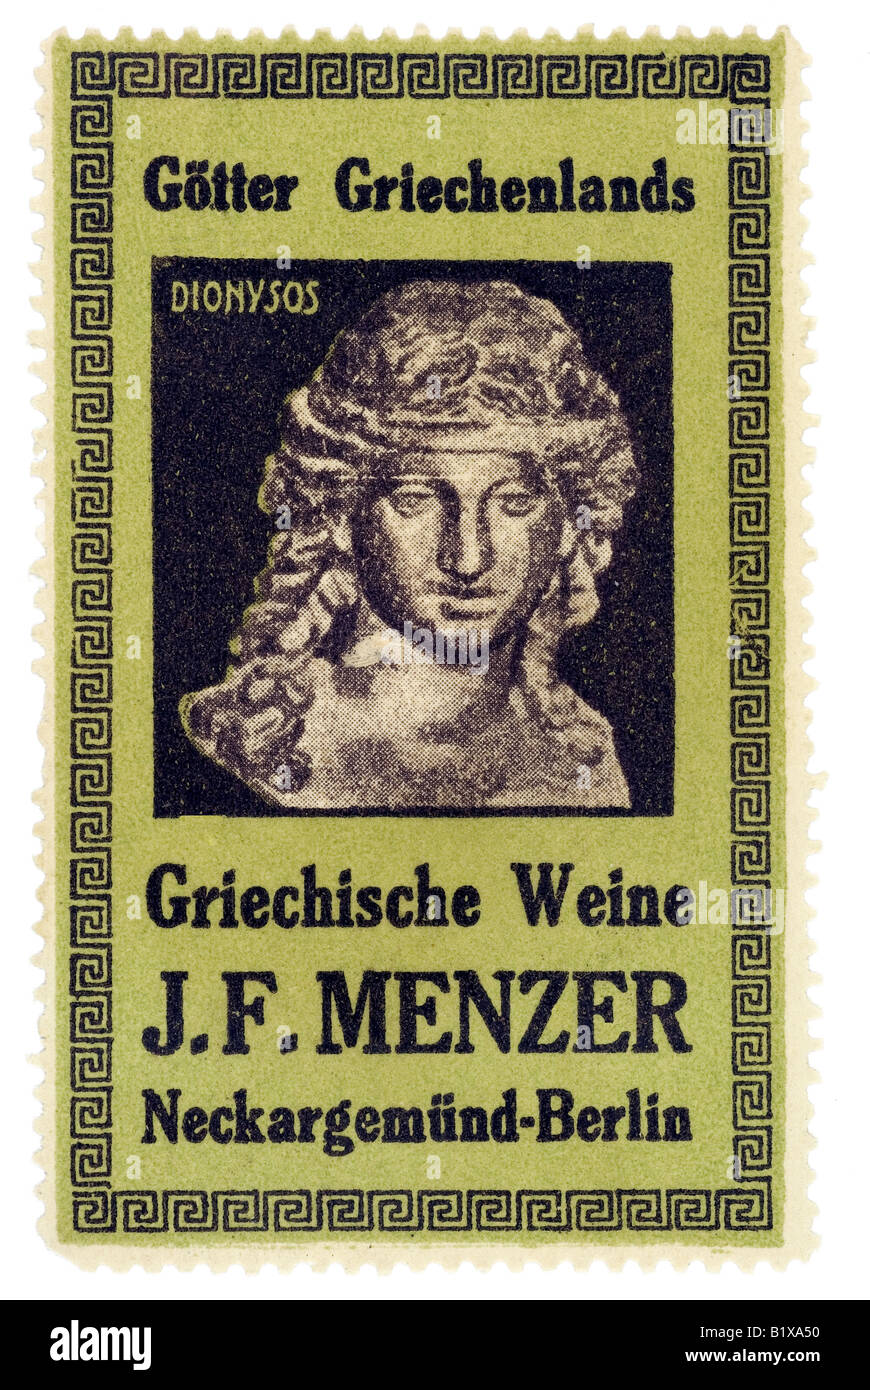 trading stamp wine Götter Griechenlands Griechische Weine J F Menzer Neckargemünd Berlin Dionysos Stock Photo